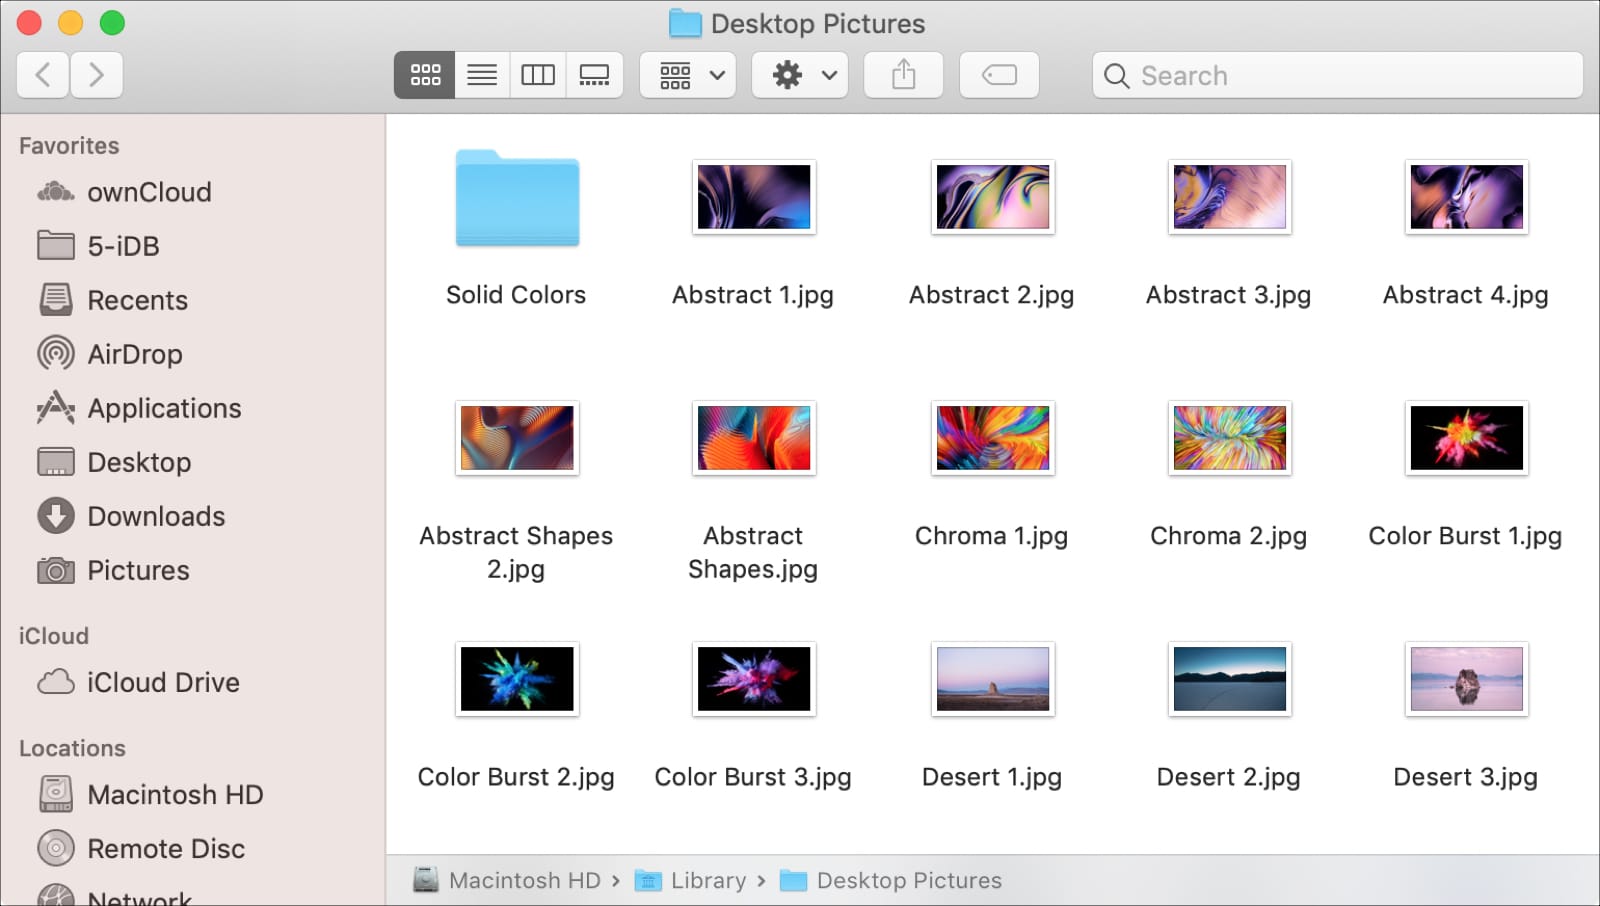 Desktop Pictures Folder on Mac